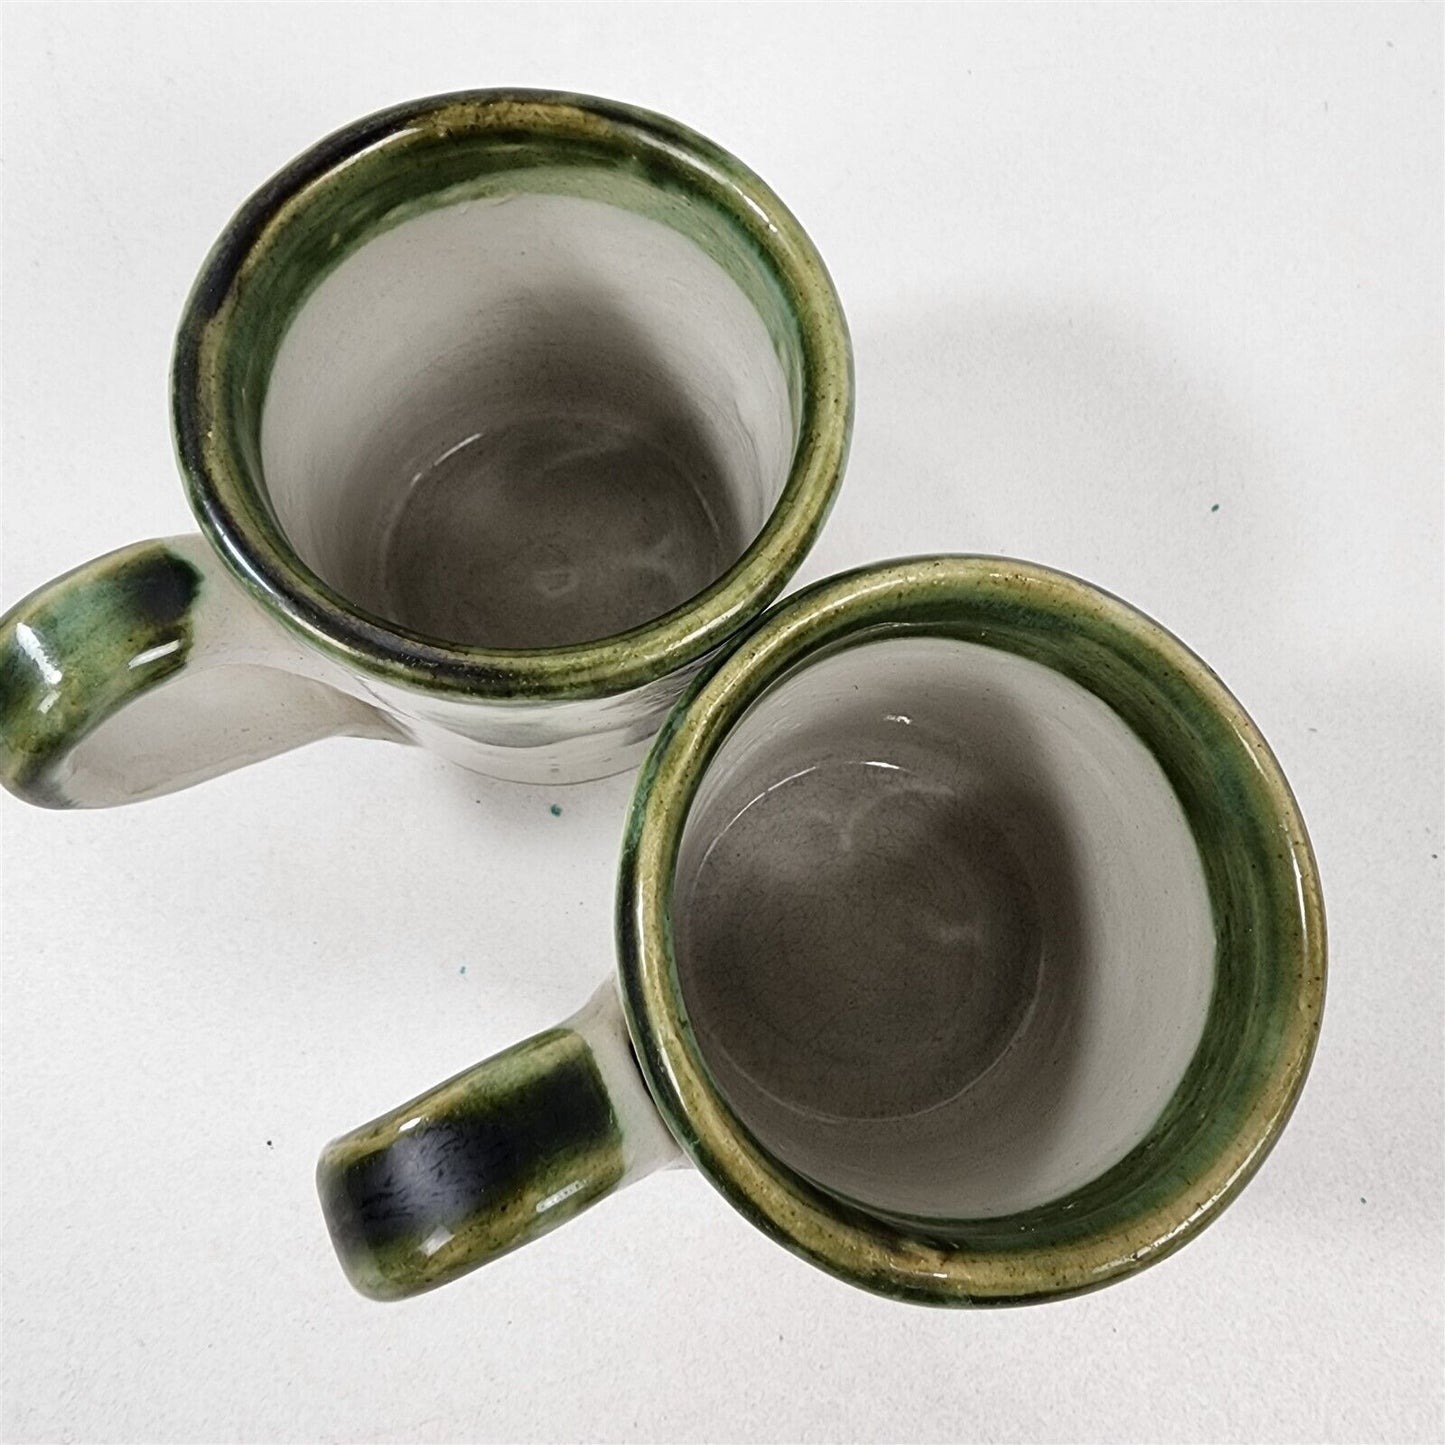 2 John B Taylor JBT Harvest Pear Stoneware Vintage Coffee Mugs Cups - 3 1/4"